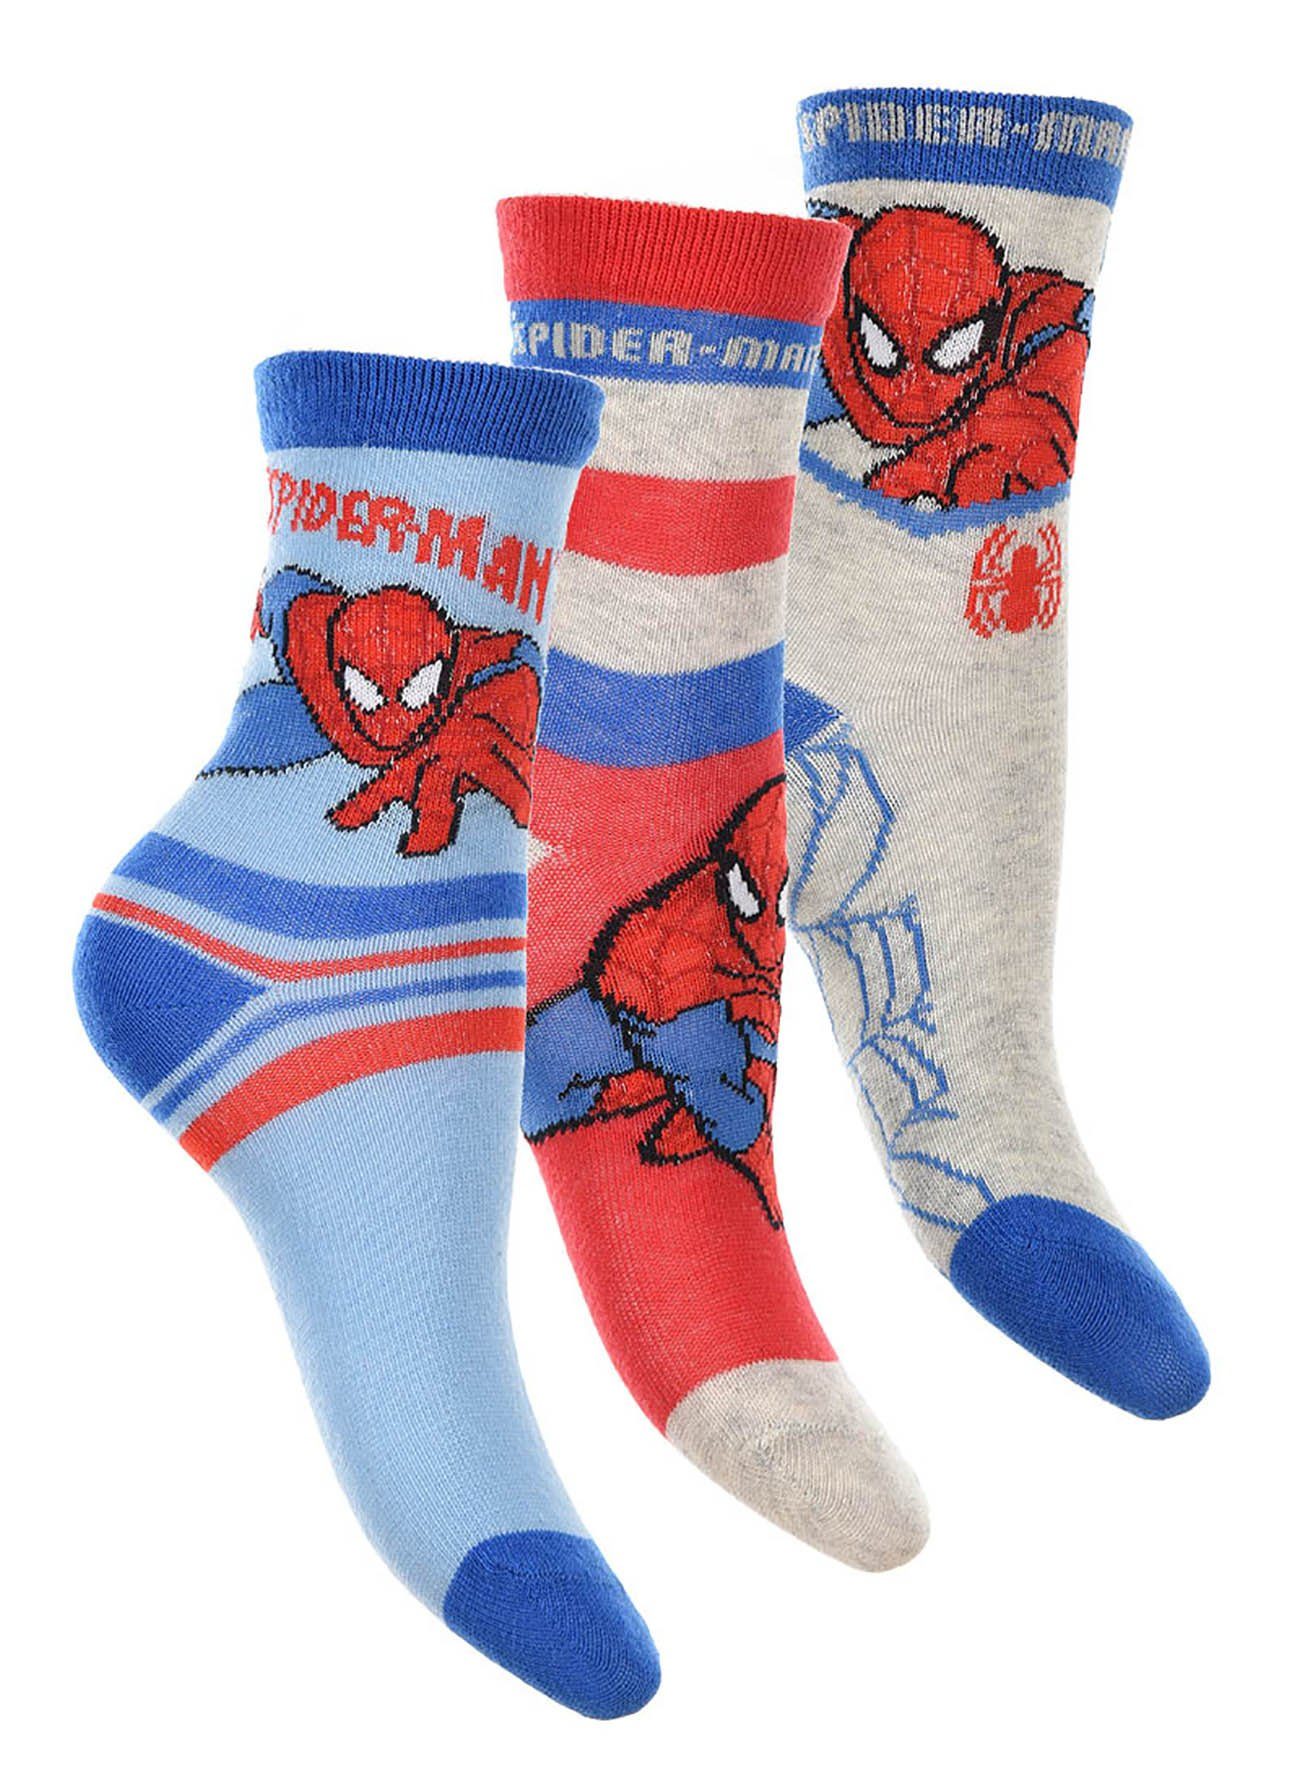 Spiderman Socken Kindersocken, 3er Pack, rot-grau-blau, Größe:23-26